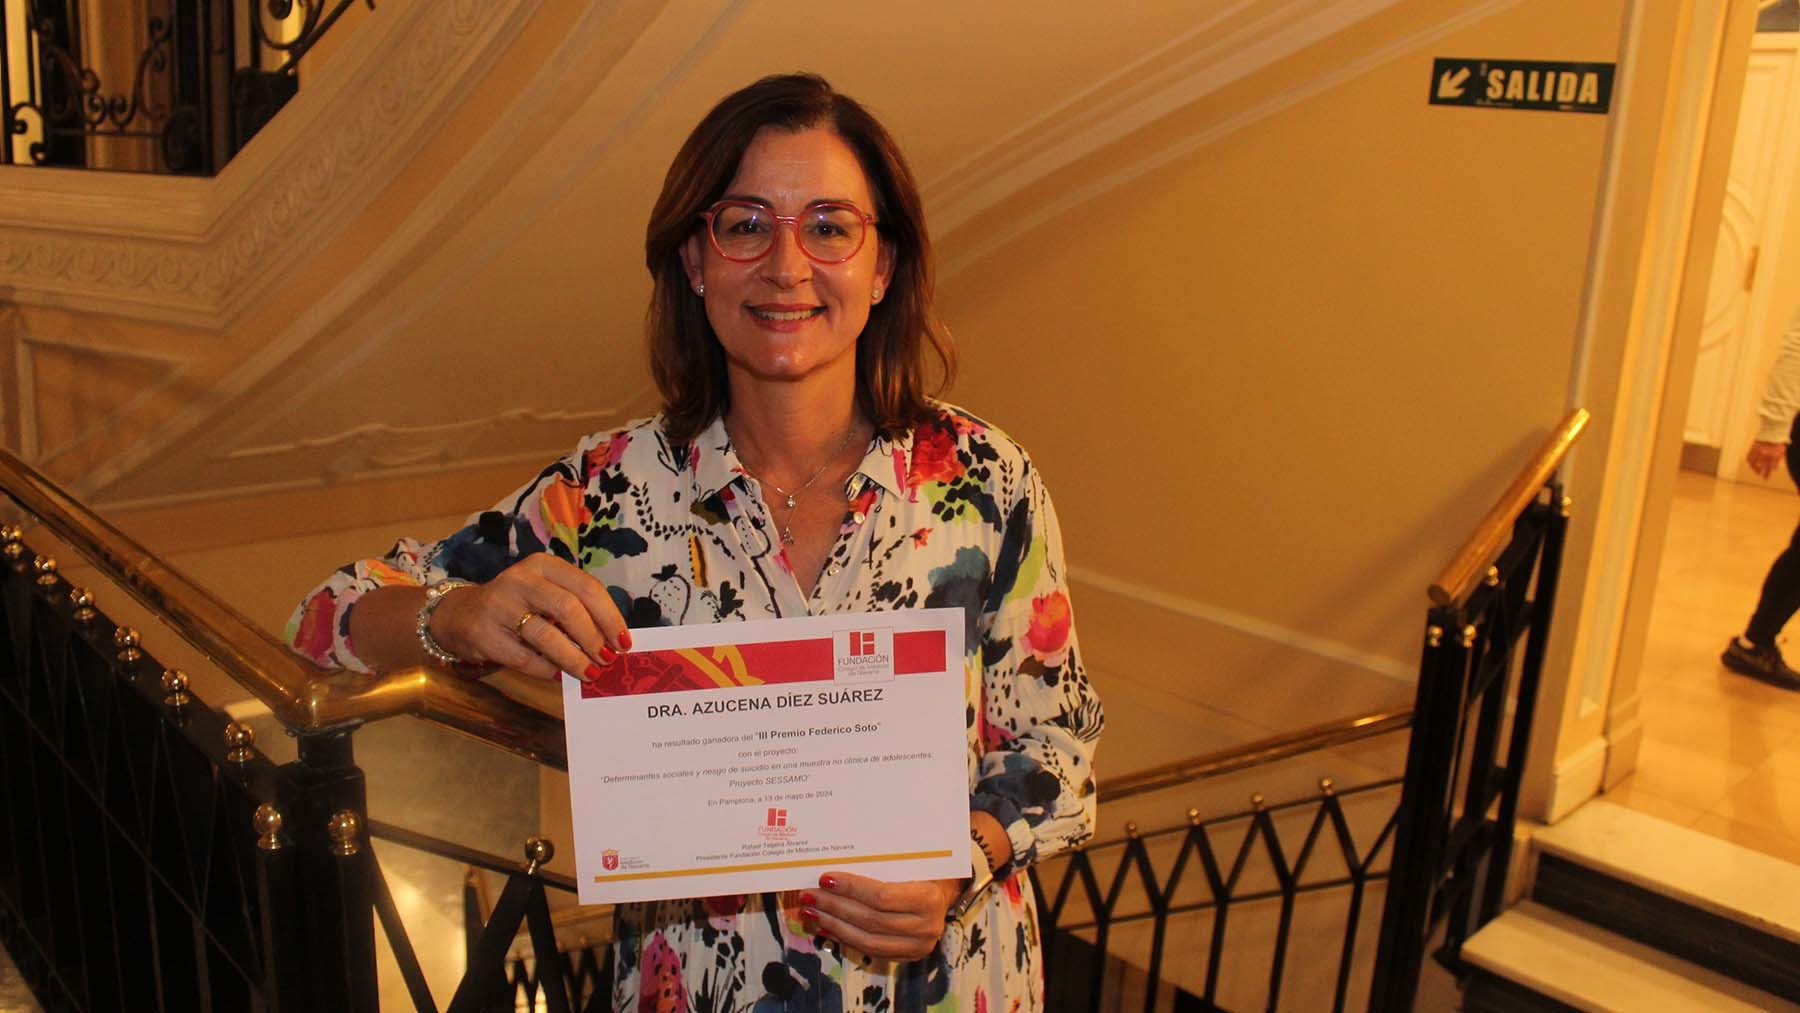 La psiquiatra que ha ganado el III Premio Federico Soto a la investigación del suicidio en Navarra